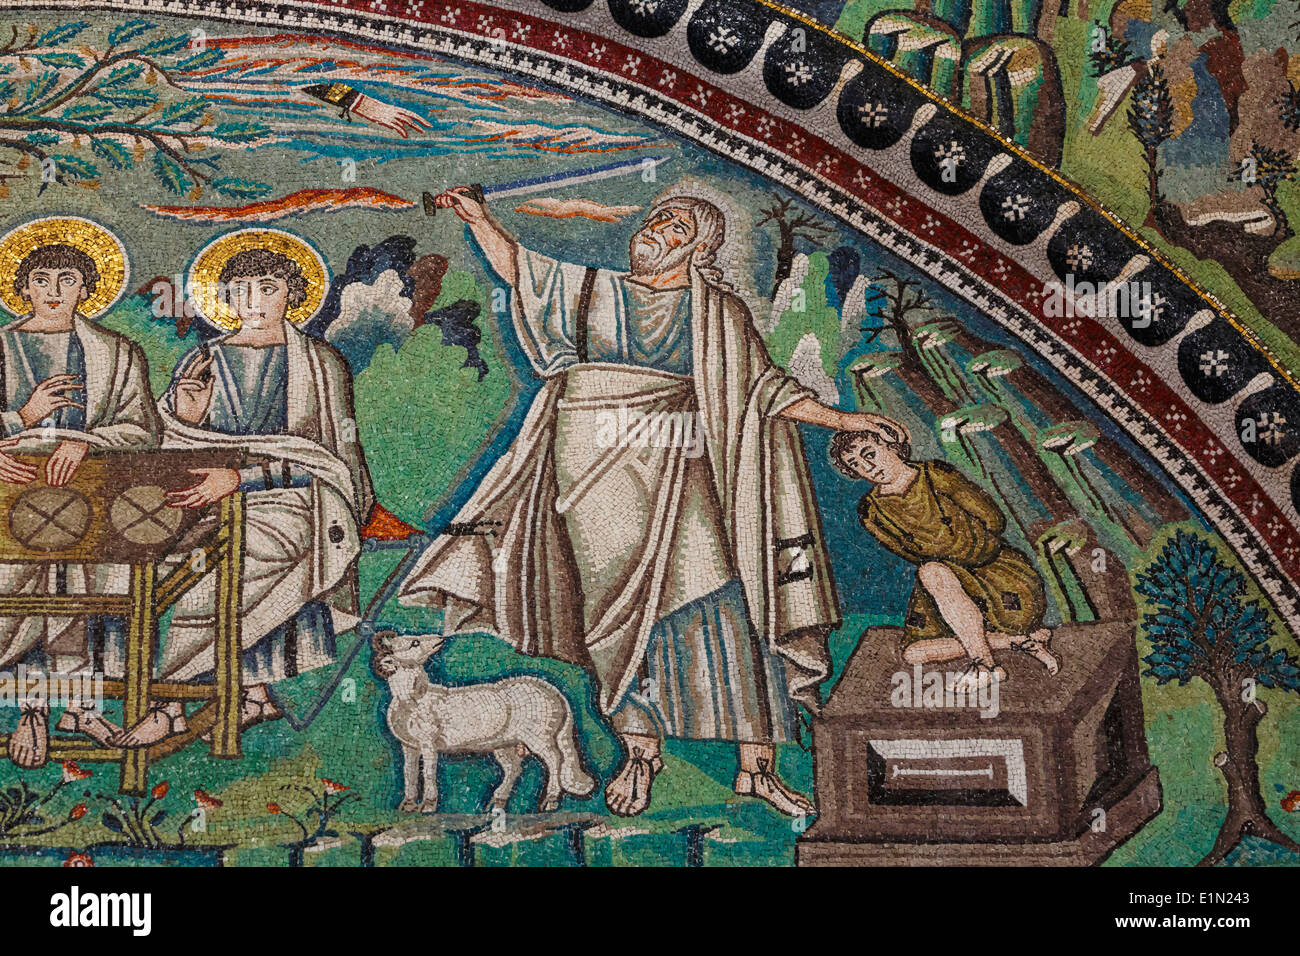 Ravenna, Provincia di Ravenna, Italia. Mosaico in San Vitale Basilica. Dettaglio dell'ospitalità di Abramo e il sacrificio di Isacco Foto Stock